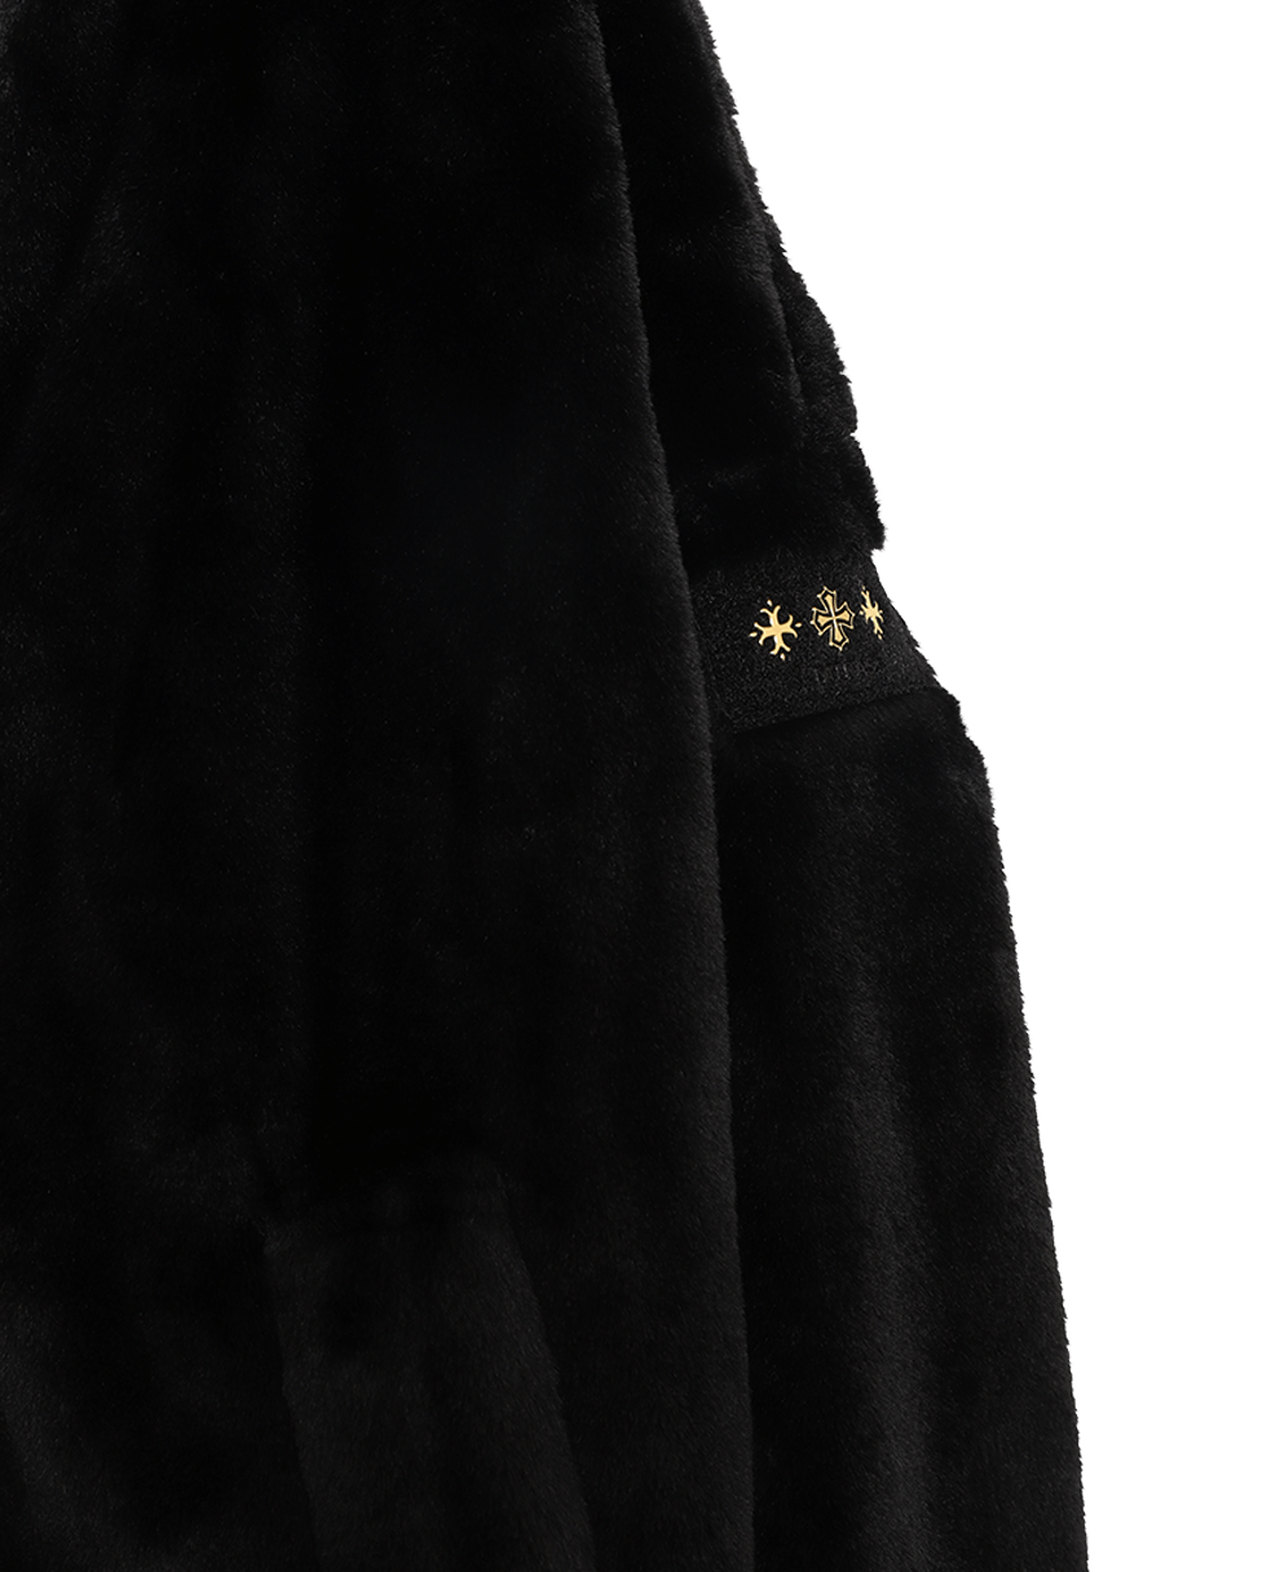 NINO Women's Jacket,BLACK, large image number 4